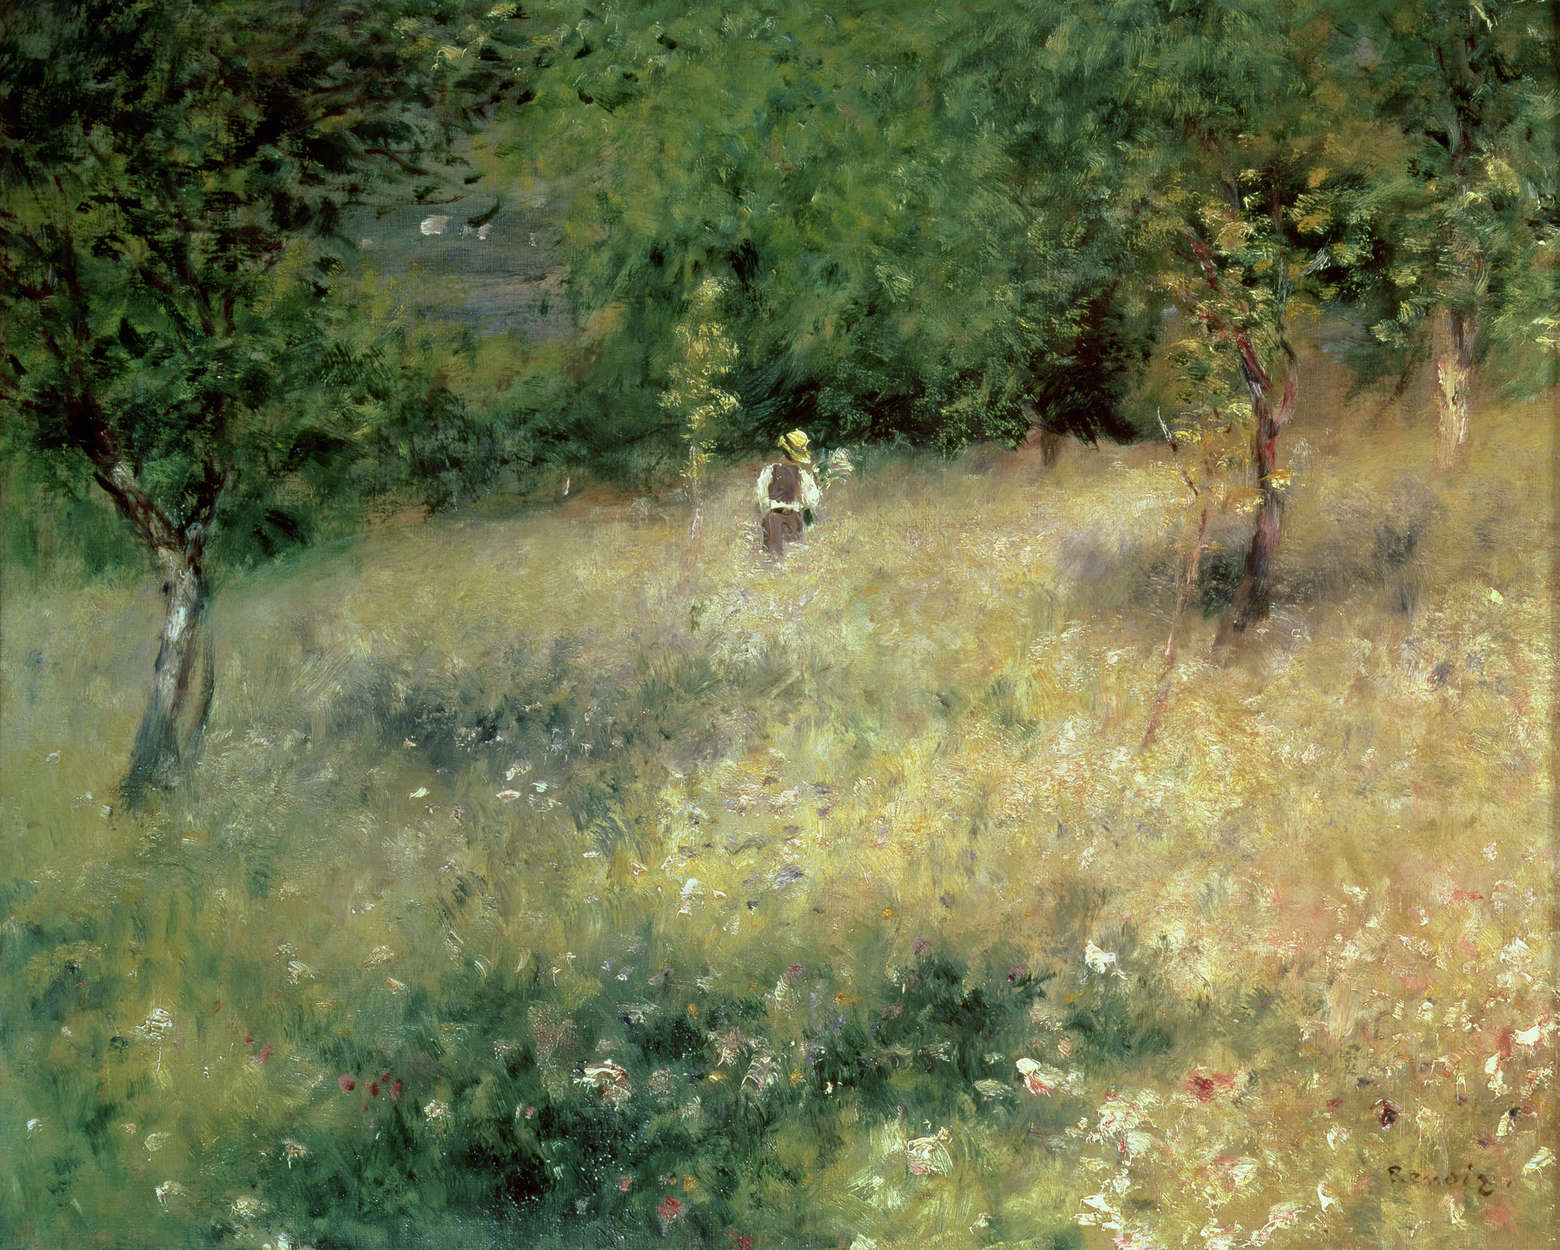             Primavera a Chatou", murale di Pierre Auguste Renoir
        